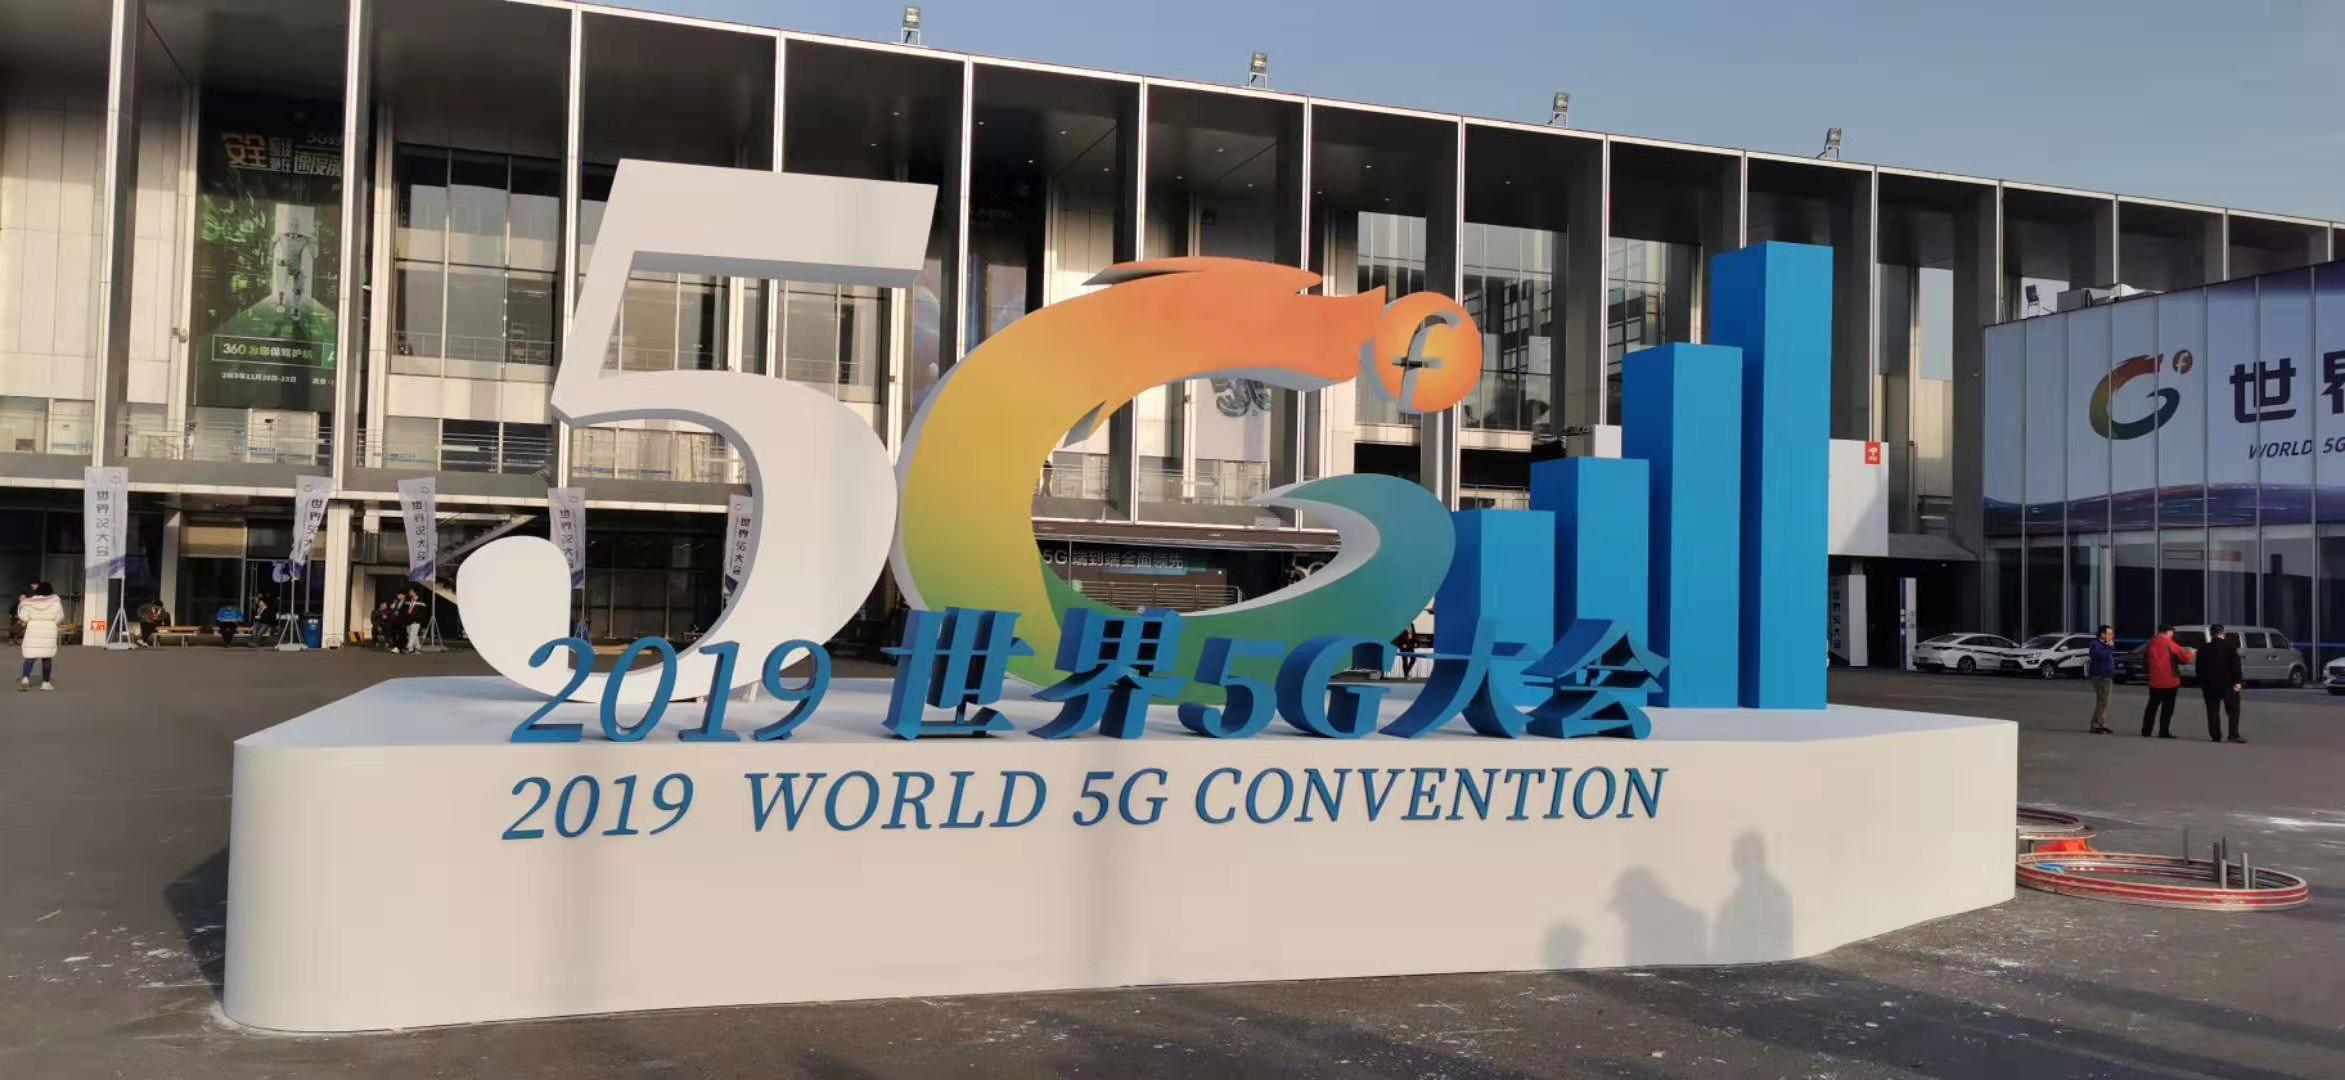 中国科技网&趣看科技 5G+4K+VR直击2019世界5G大会